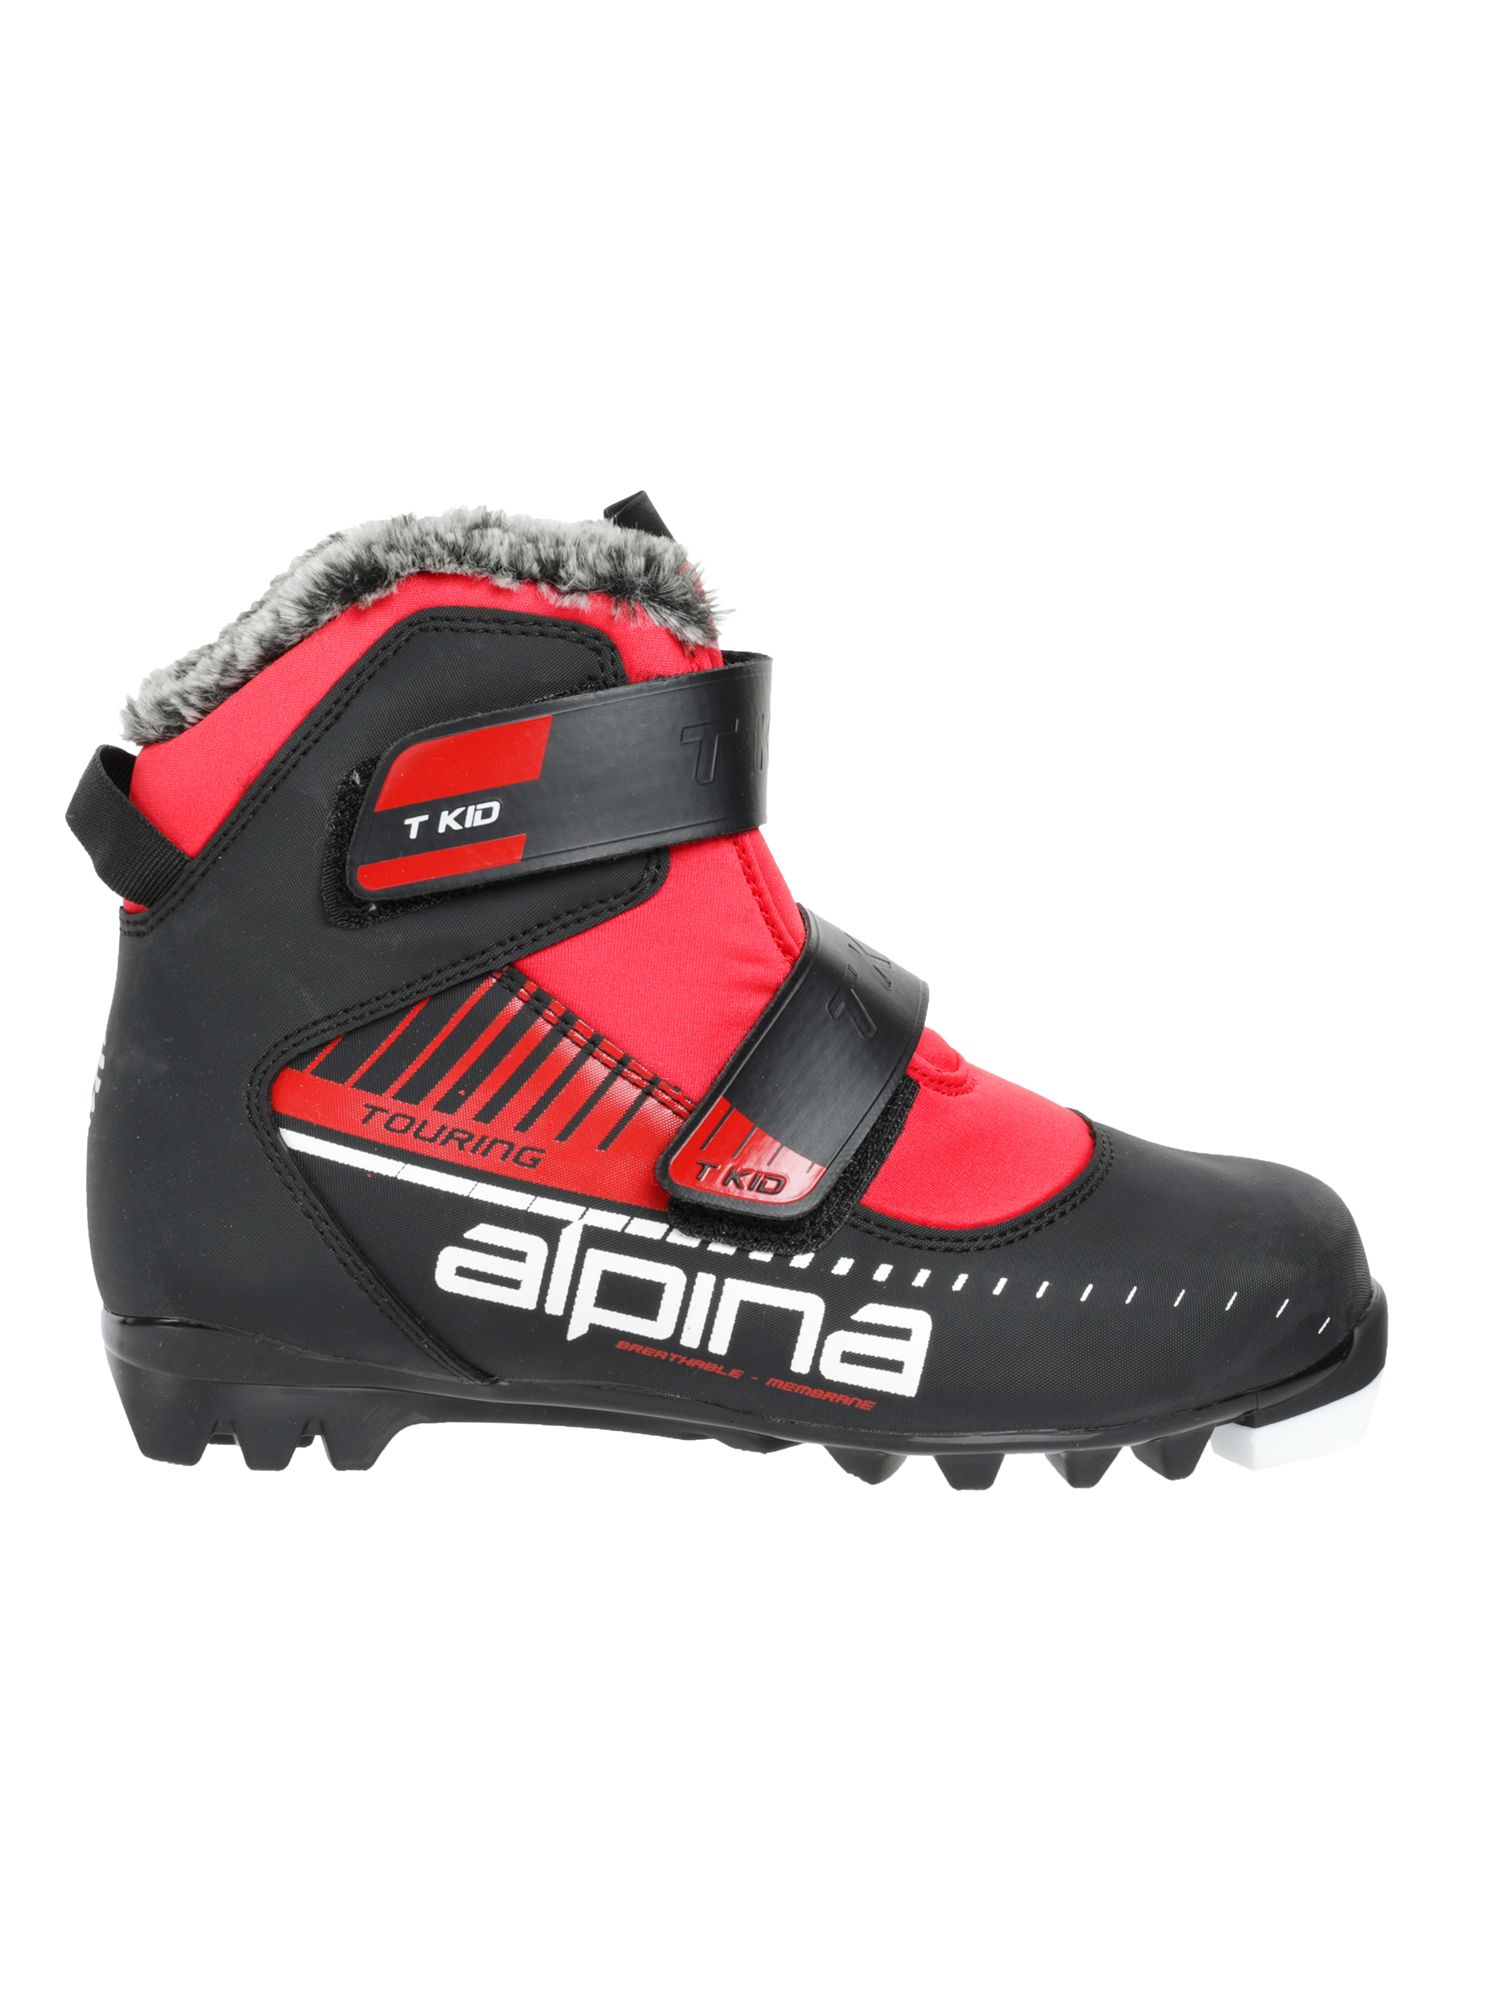 Ботинки Alpina. Лыжные ботинки Alpina детские солнышко. Лыжные Alpina детские. Альпина дети